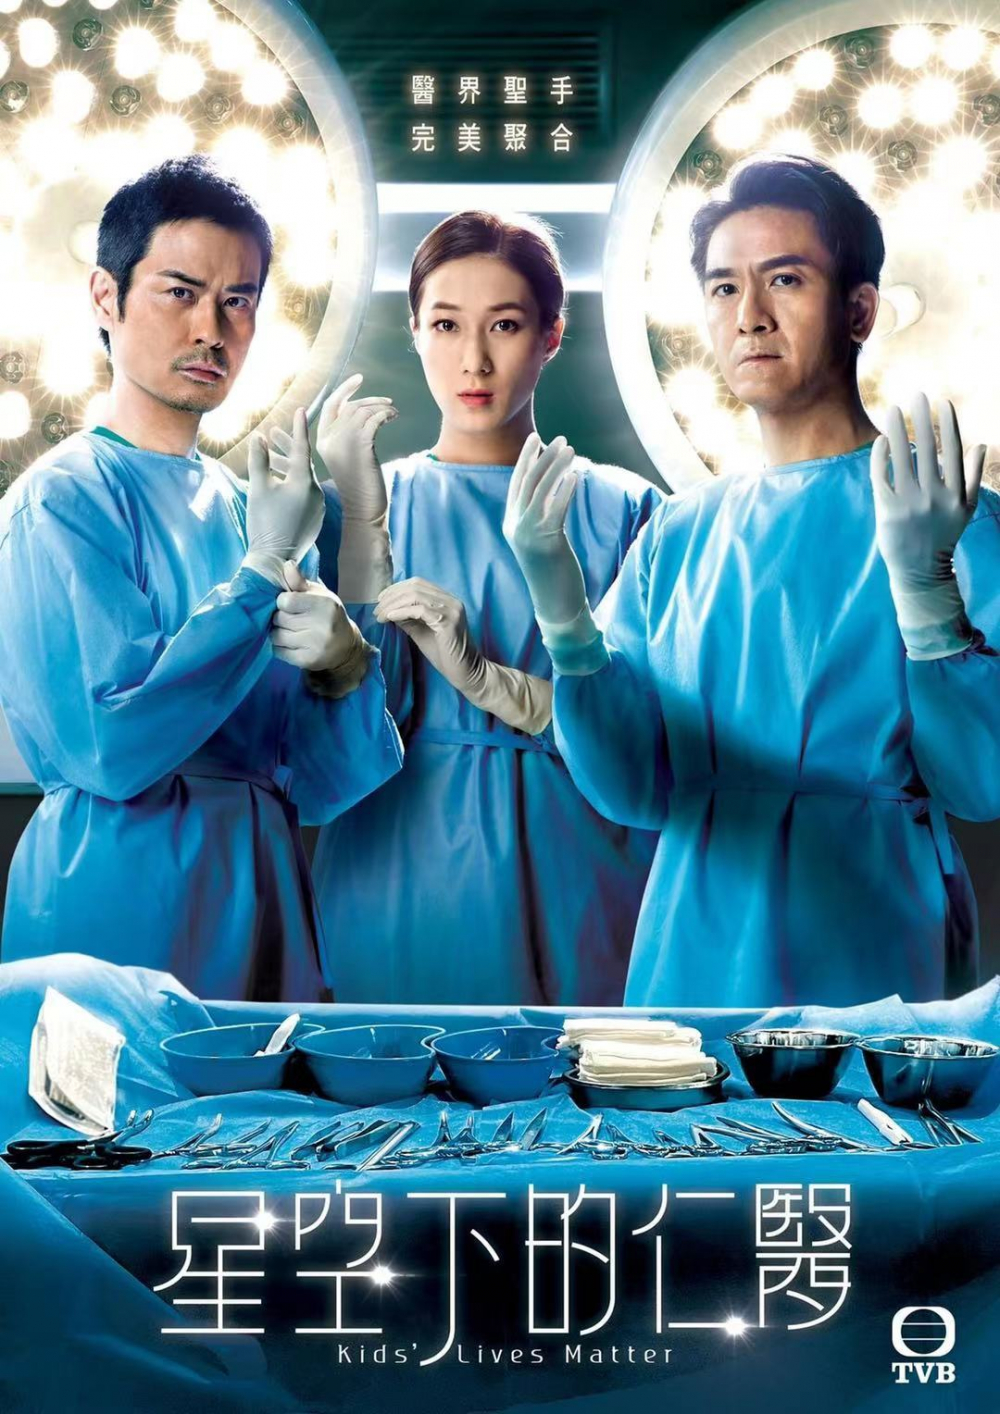 情怀牌+行业剧，TVB还是这两样玩得最溜……9分+的《星空下的仁医》勾起了你多少追剧记忆？